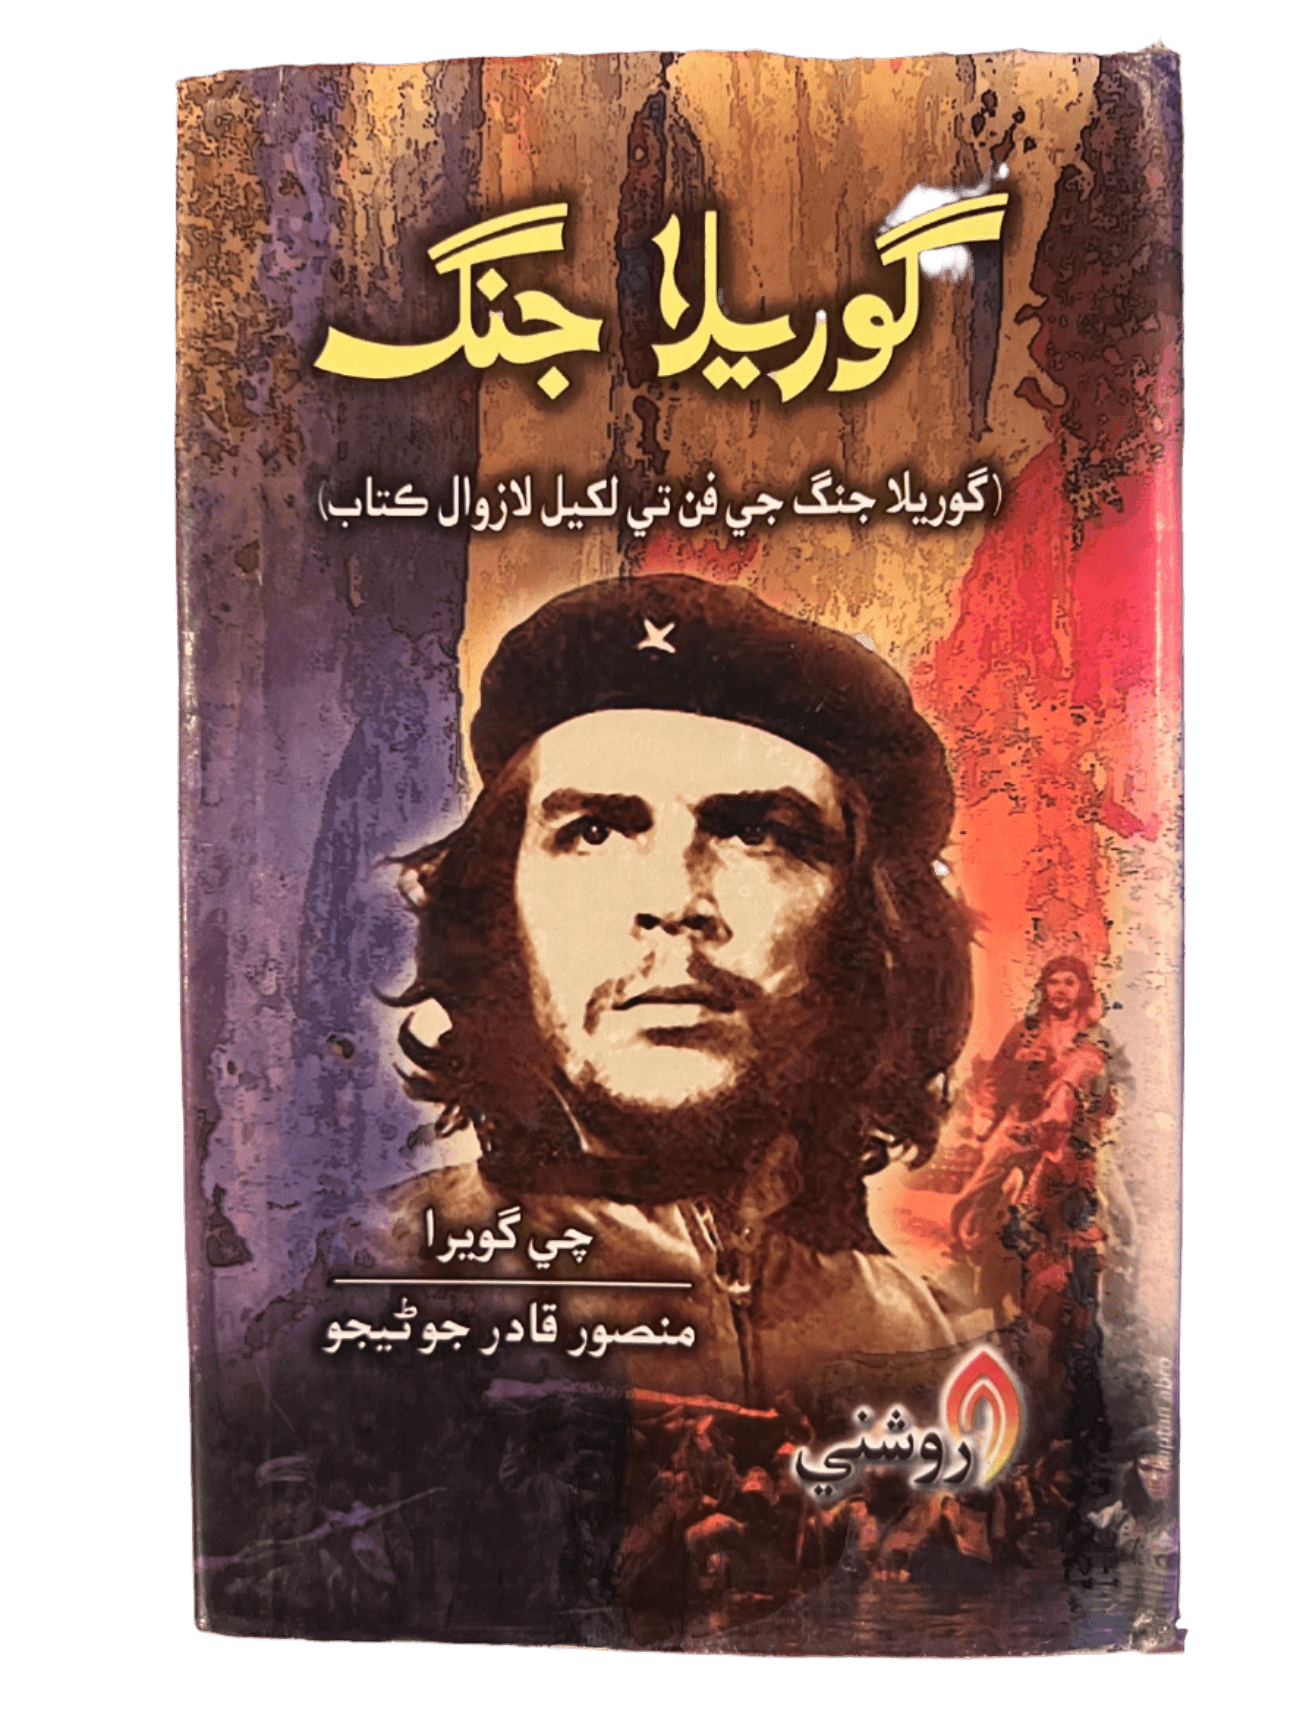 Guerilla Warfare (Sindhi) - KHAJISTAN™